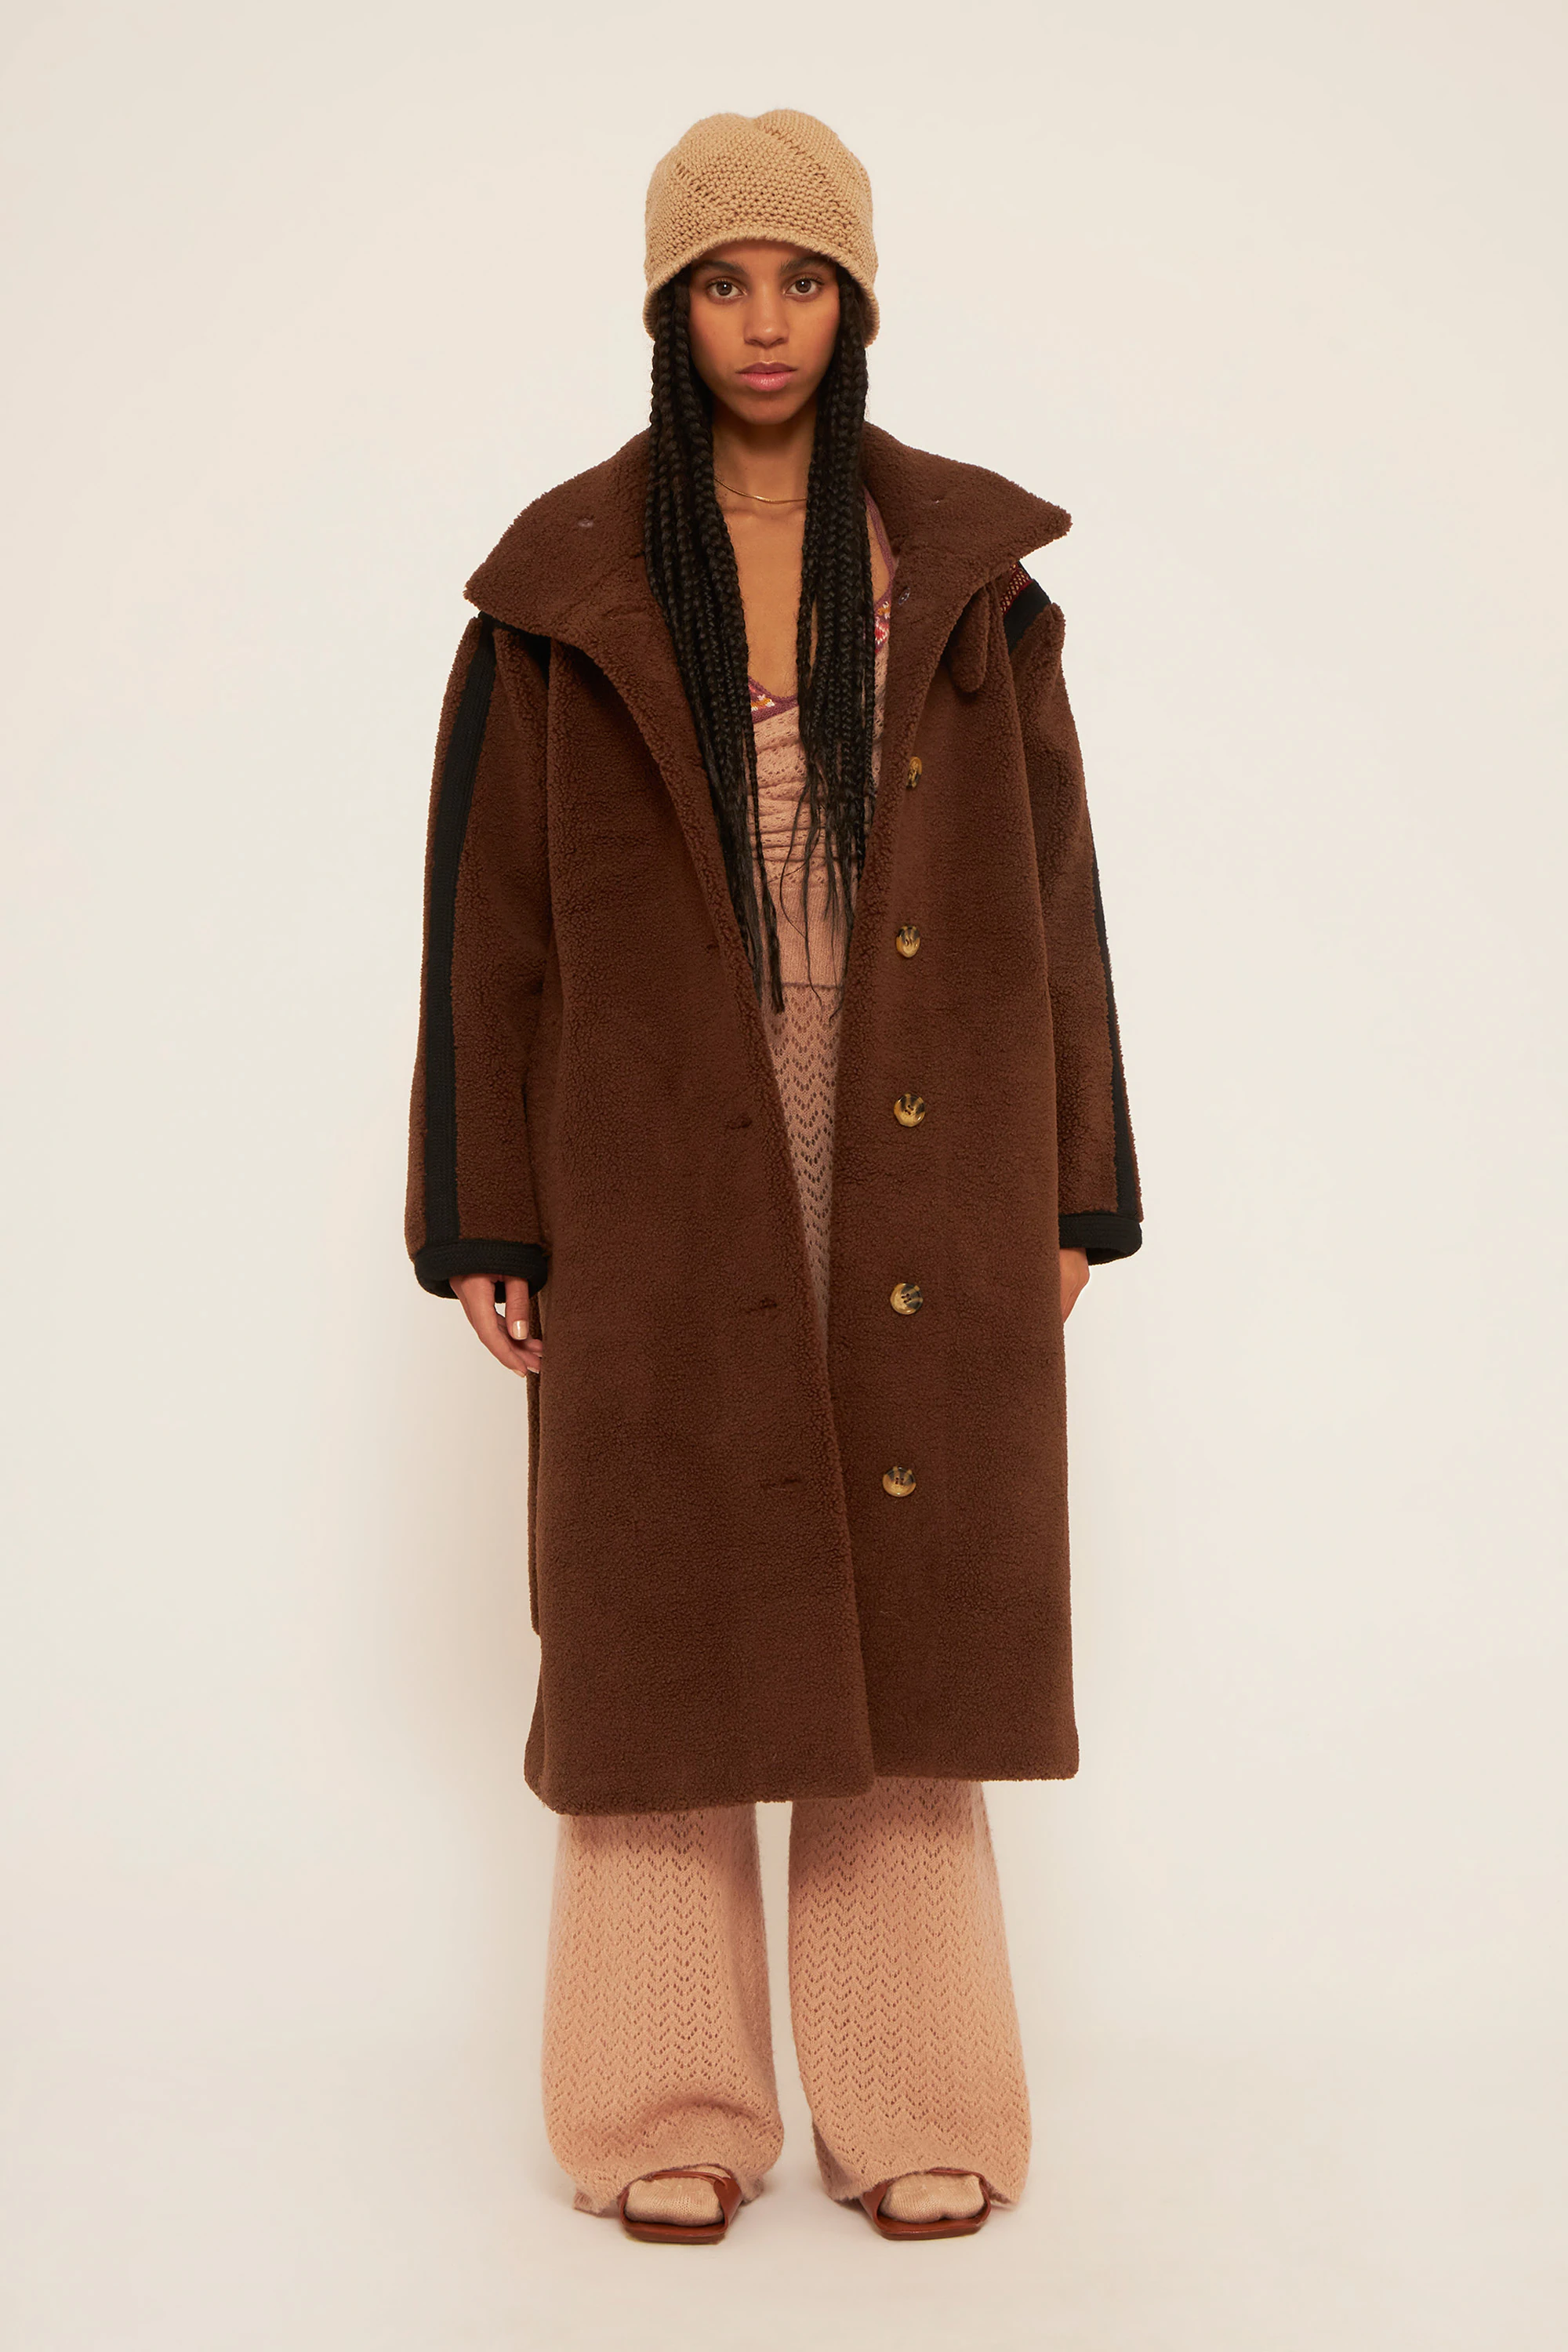 Abrigo largo de piel sintética marrón, con dos bolsillos delanteros y cierre con botones de Antik Batik. Disponible por 420 euros.